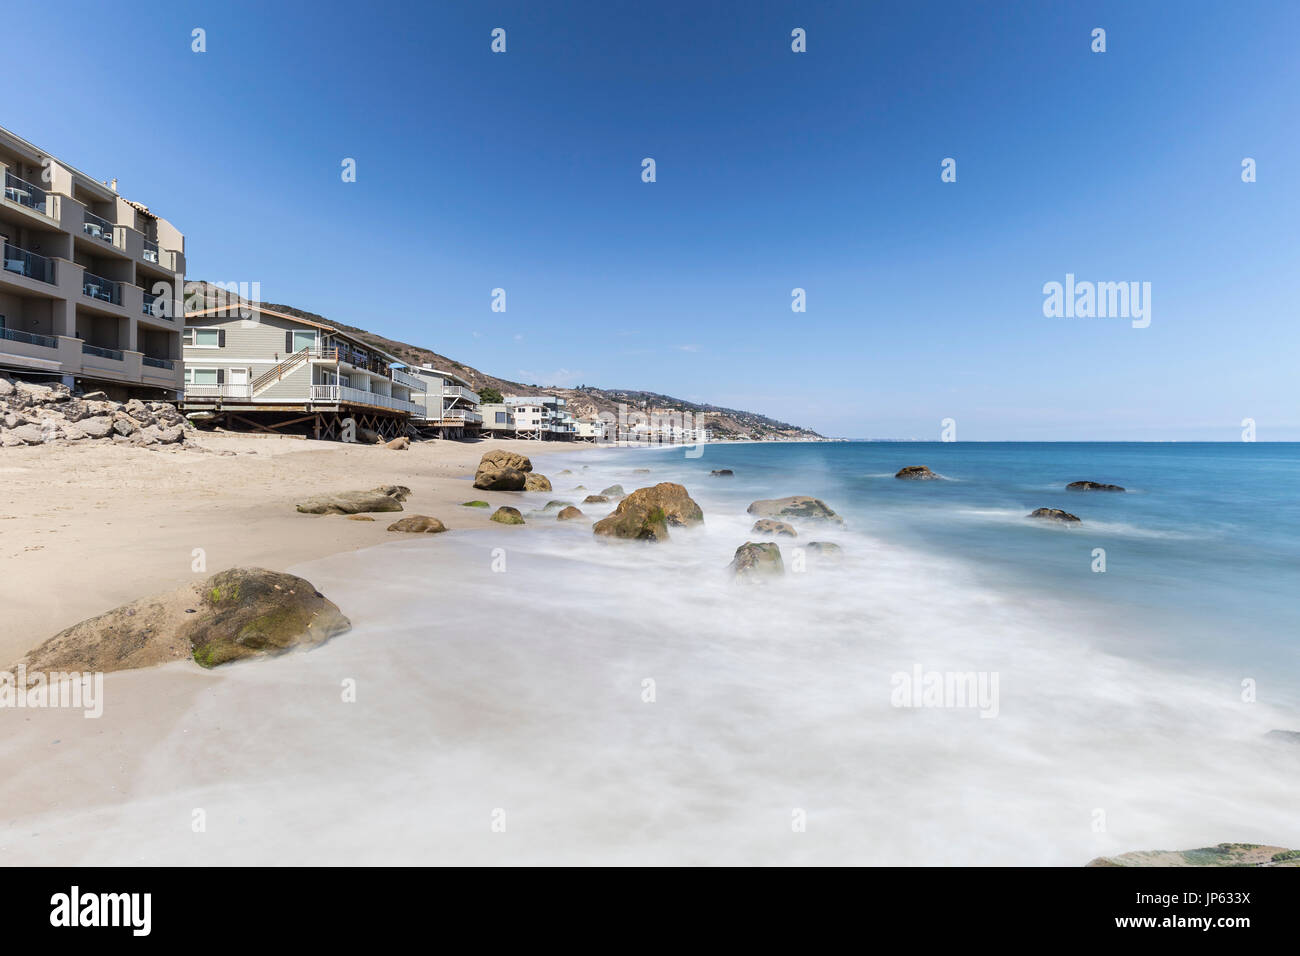 Malibu Beach-Häuser mit Motion blur Surf in der Nähe von Los Angeles in Südkalifornien. Stockfoto